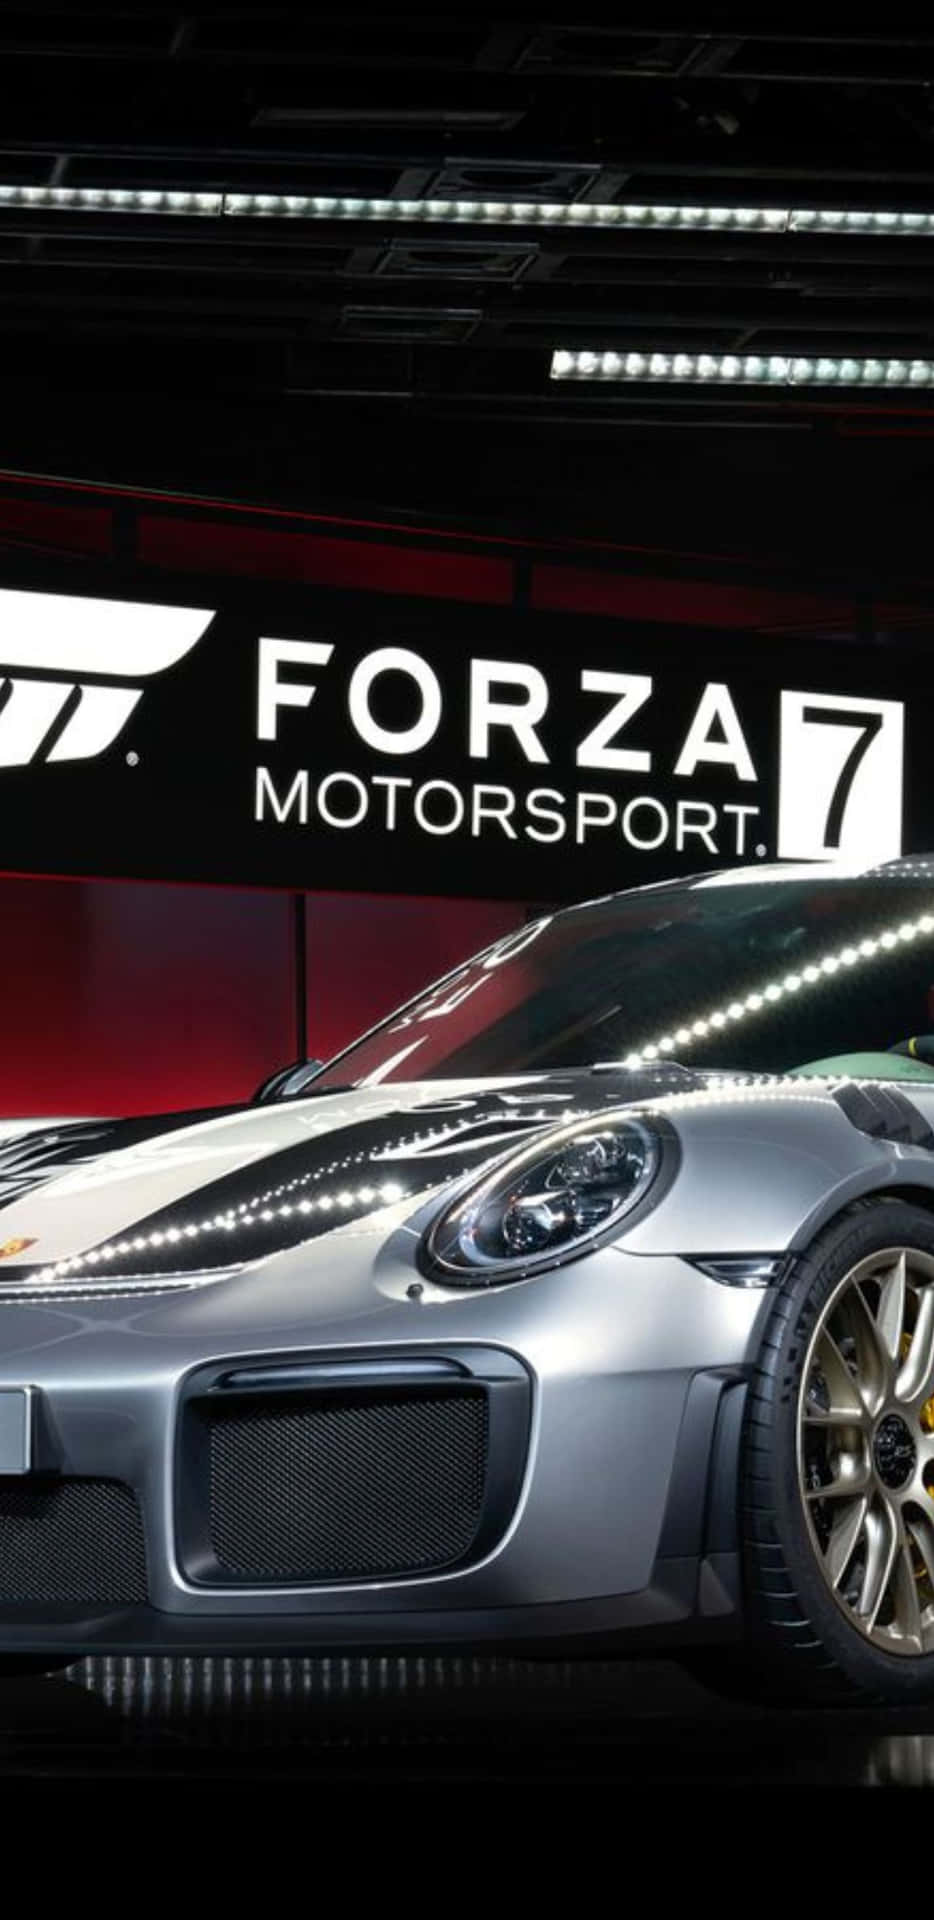 Elnuevo Pixel 3xl Viene Cargado De Energía Con Forza Motorsport 7 Para Una Experiencia De Juego Revolucionaria.